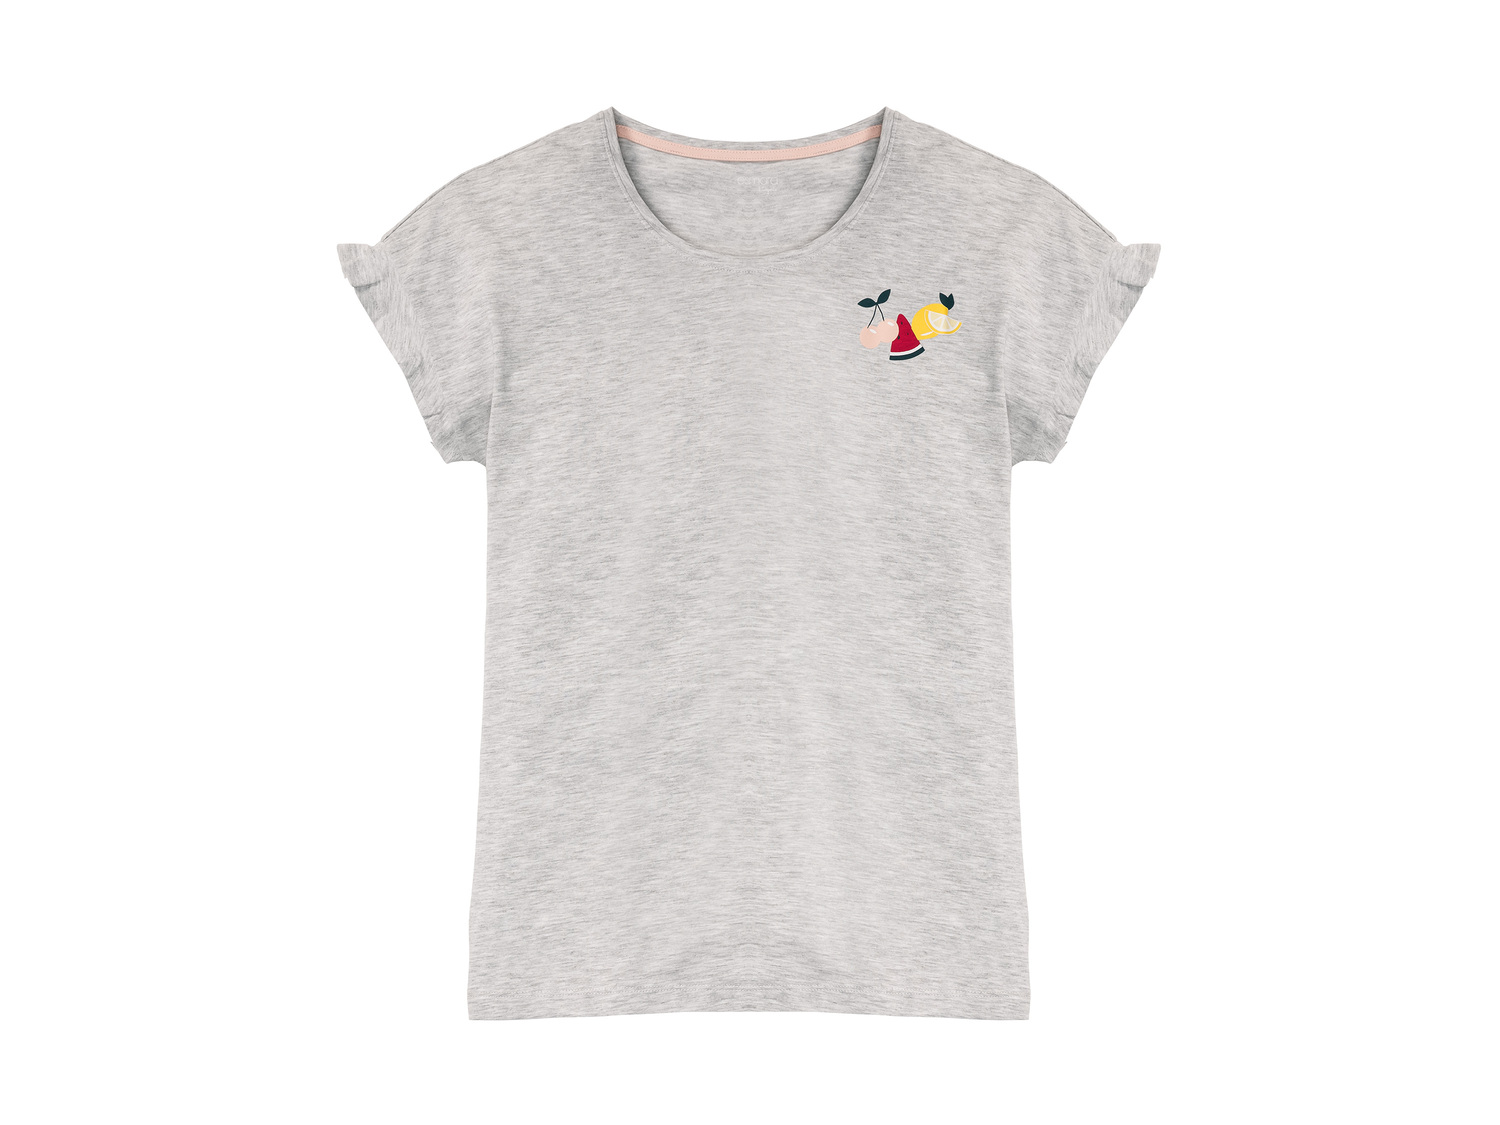 T-shirt de nuit femme , le prix 3.99 € 
- Du S au XL selon modèle.
- Ex. 98 ...